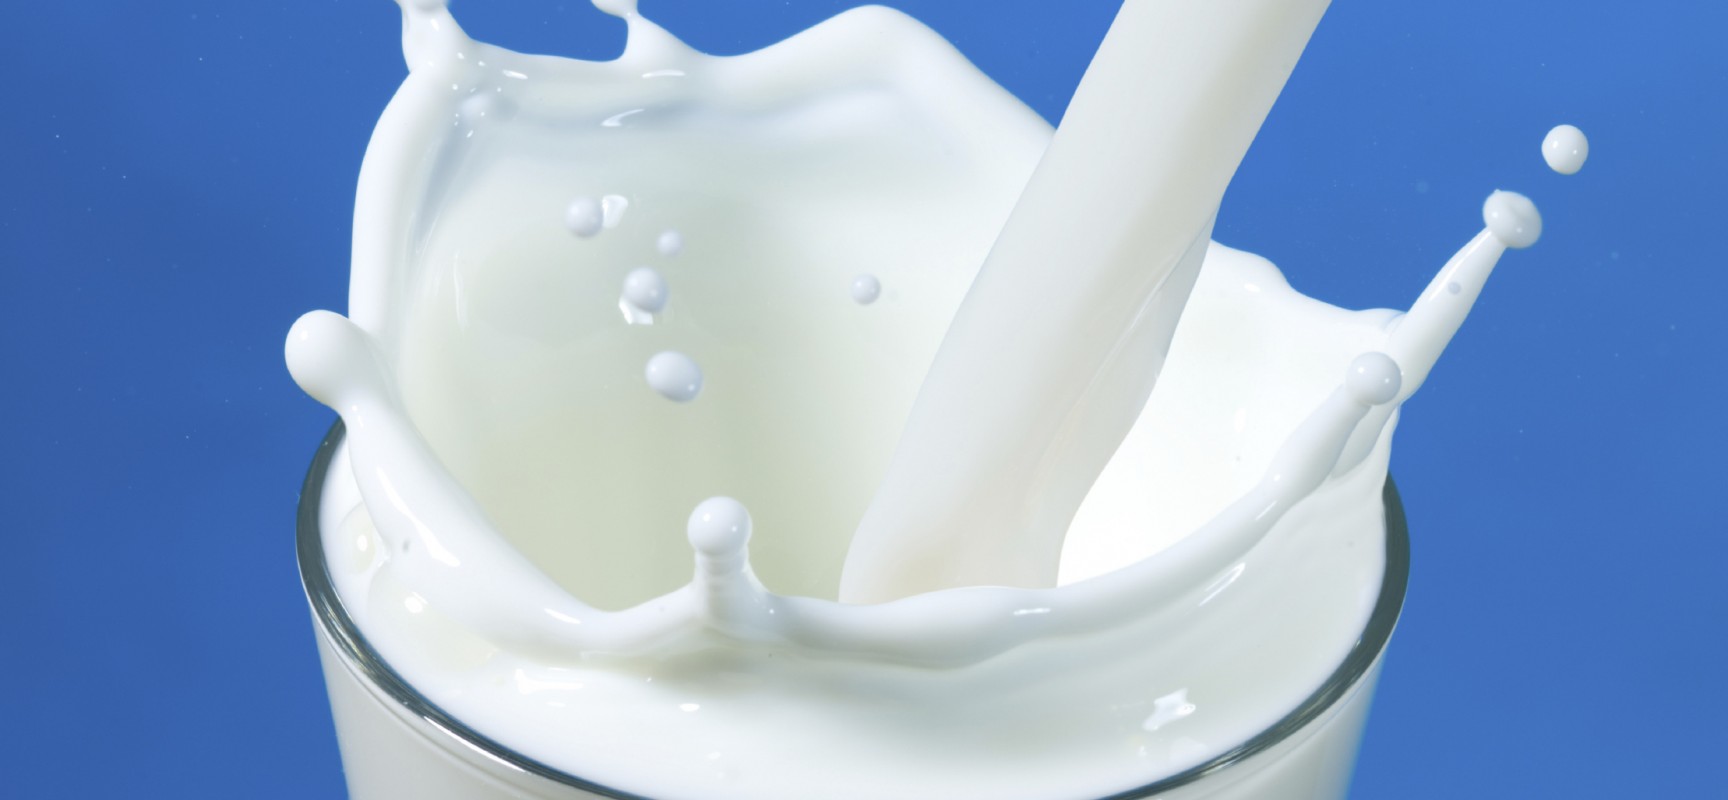 فوائد الحليب للجسم و البشرة .